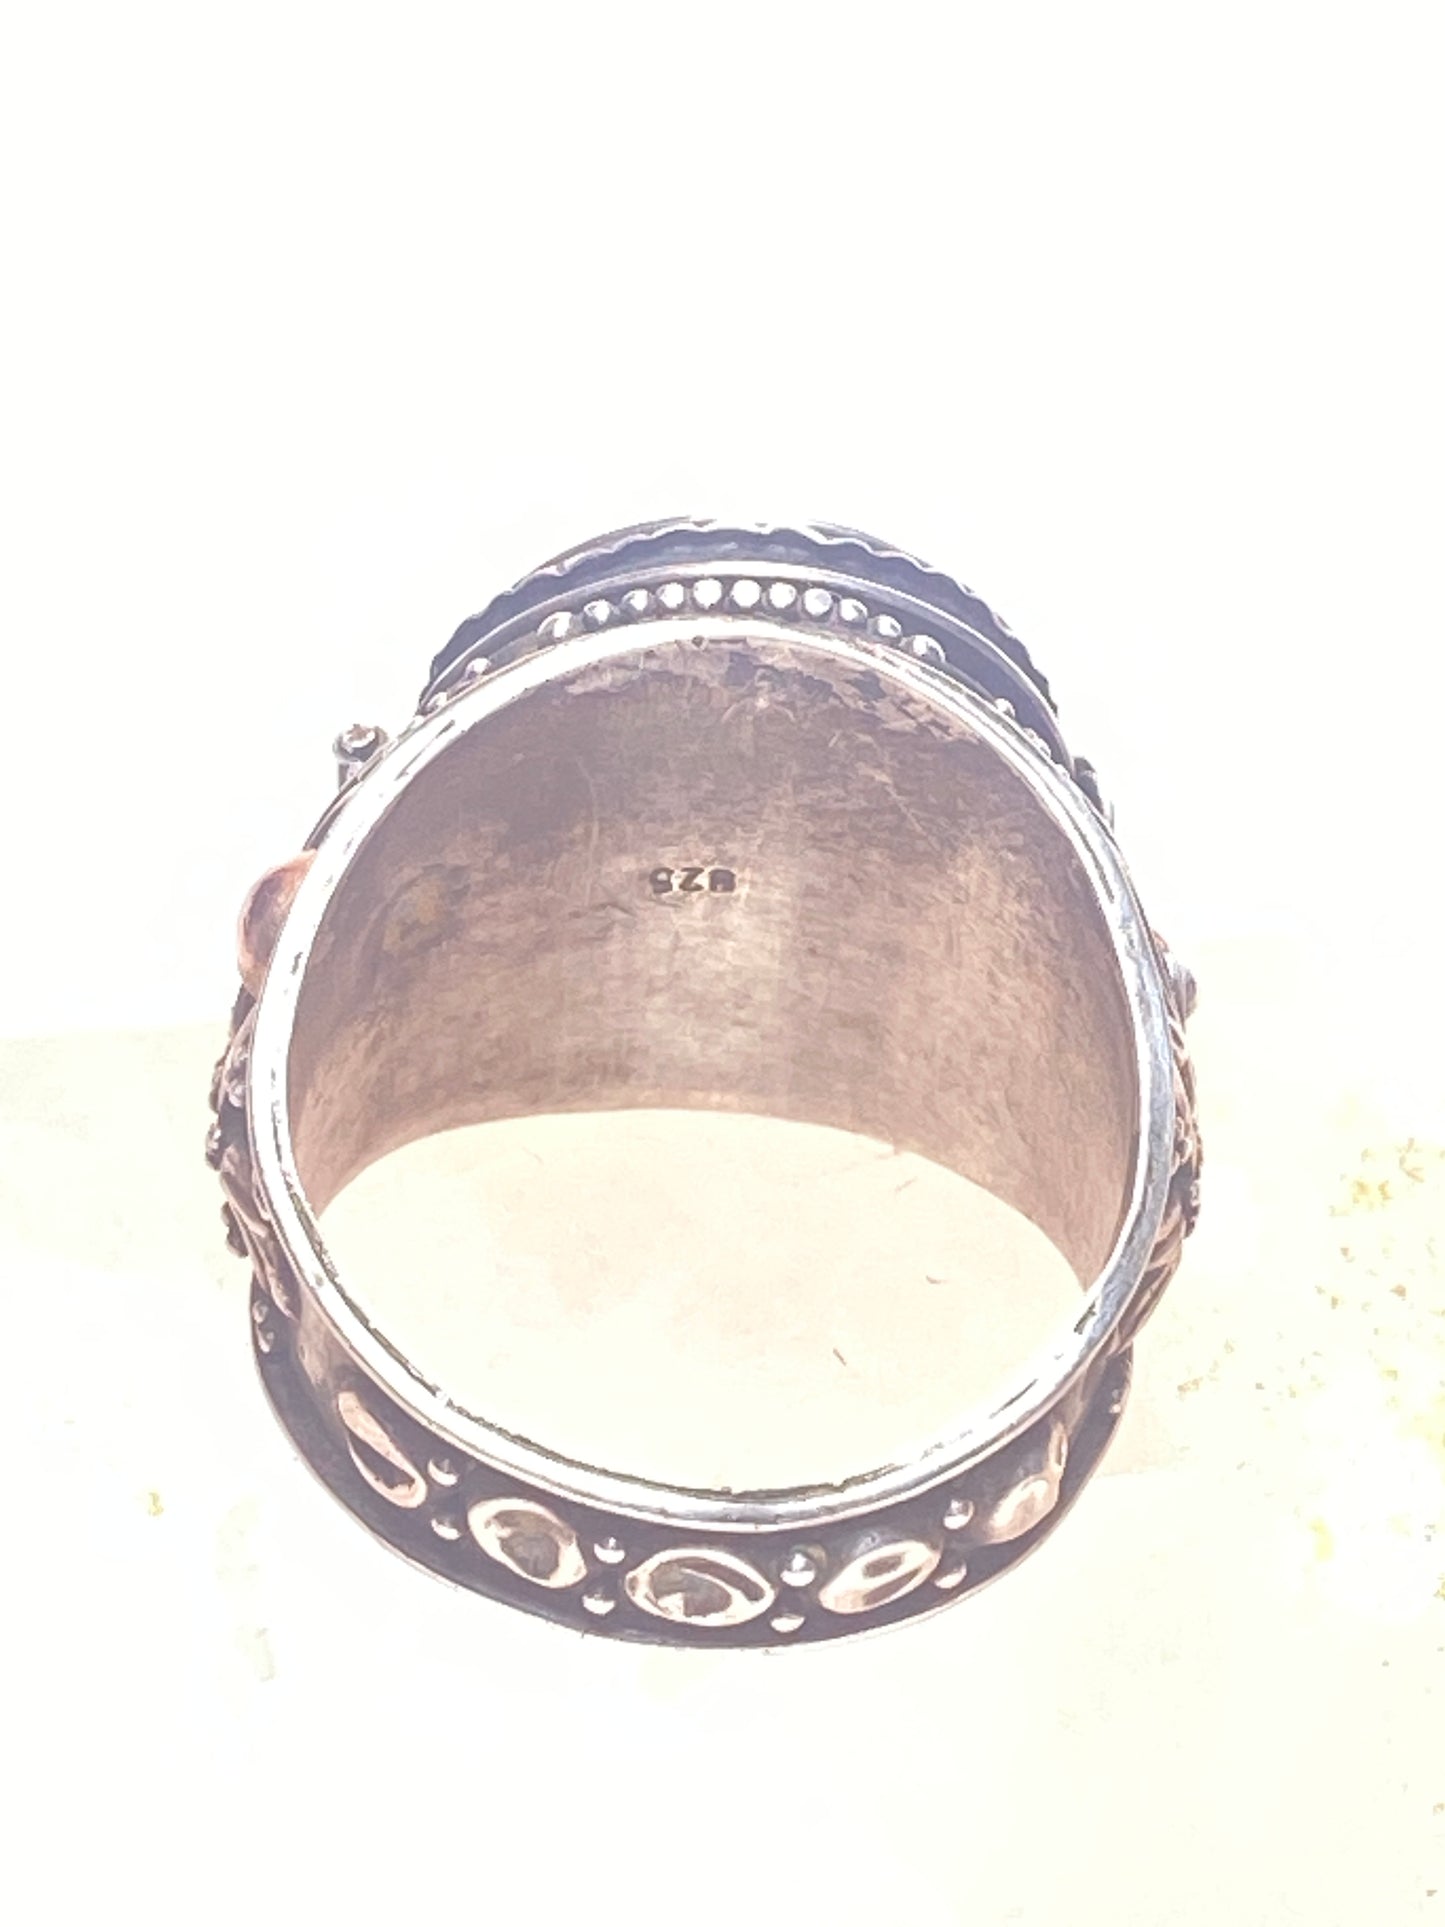 Poison ring size 8.50 teardrop sterling silver women